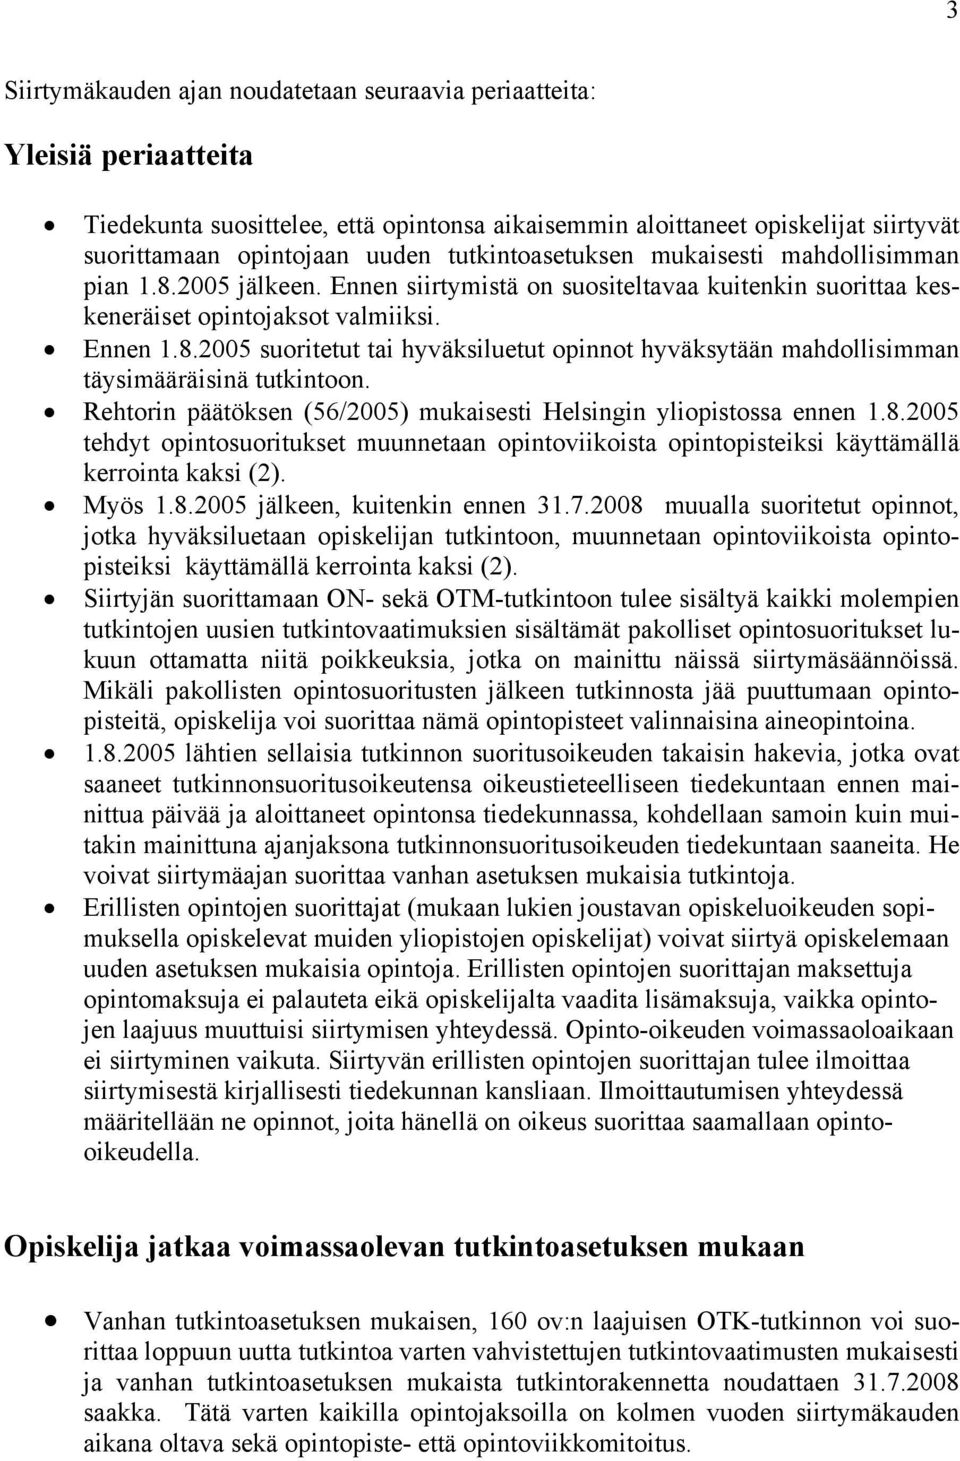 Rehtorin päätöksen (56/2005) mukaisesti Helsingin yliopistossa ennen 1.8.2005 tehdyt opintosuoritukset muunnetaan opintoviikoista opintopisteiksi käyttämällä kerrointa kaksi (2). Myös 1.8.2005 jälkeen, kuitenkin ennen 31.